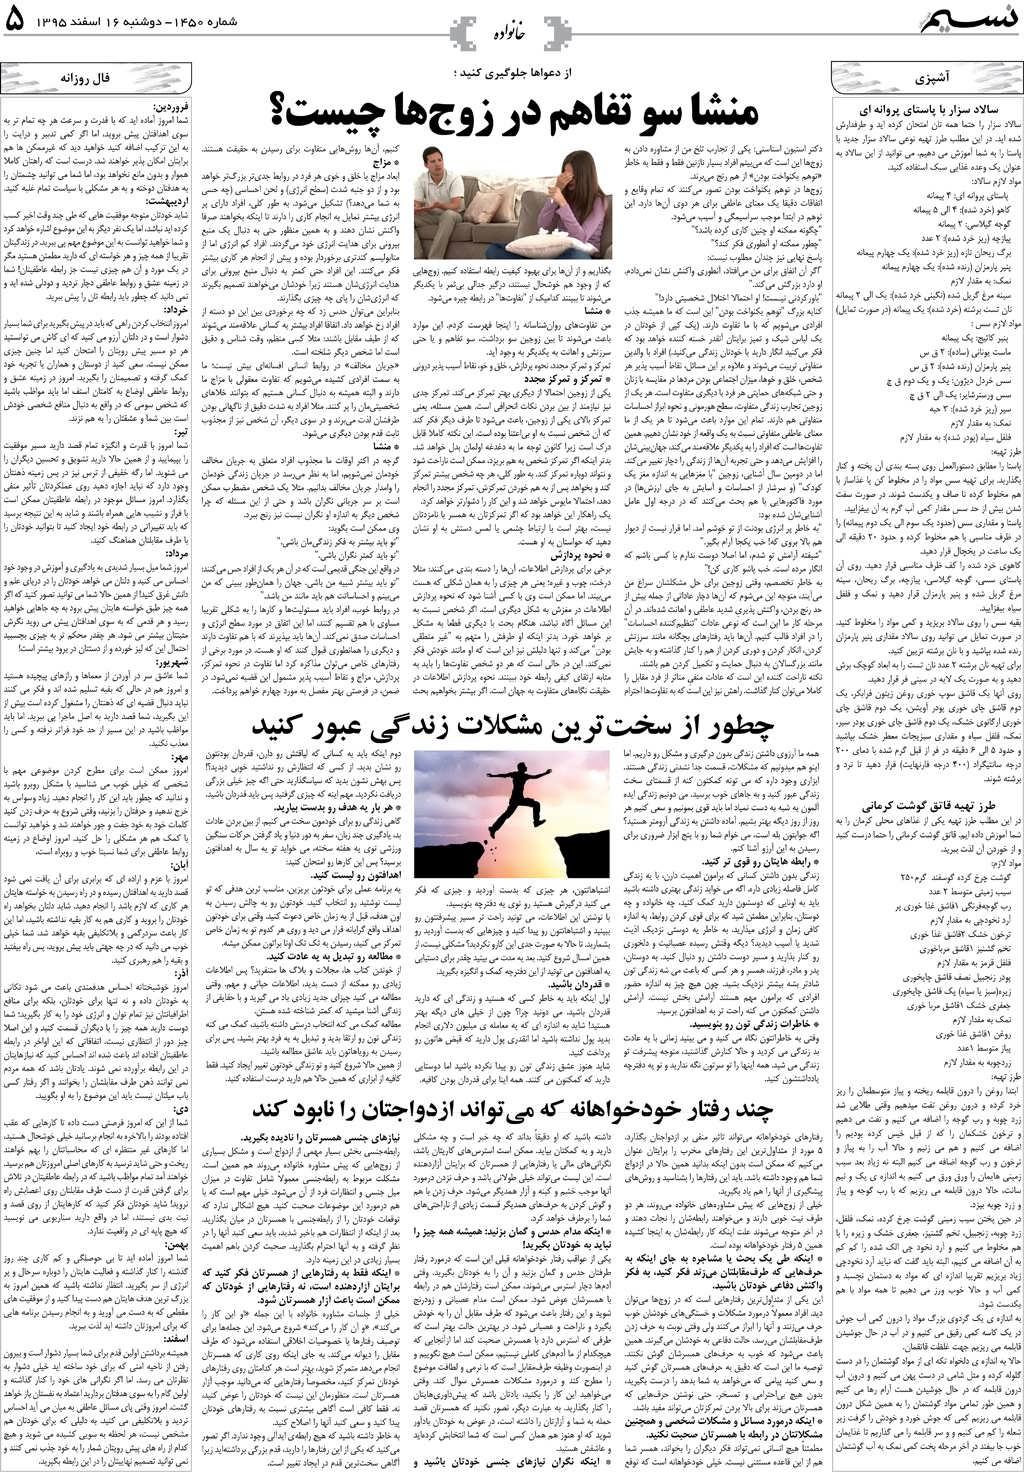 صفحه خانواده روزنامه نسیم شماره 1450